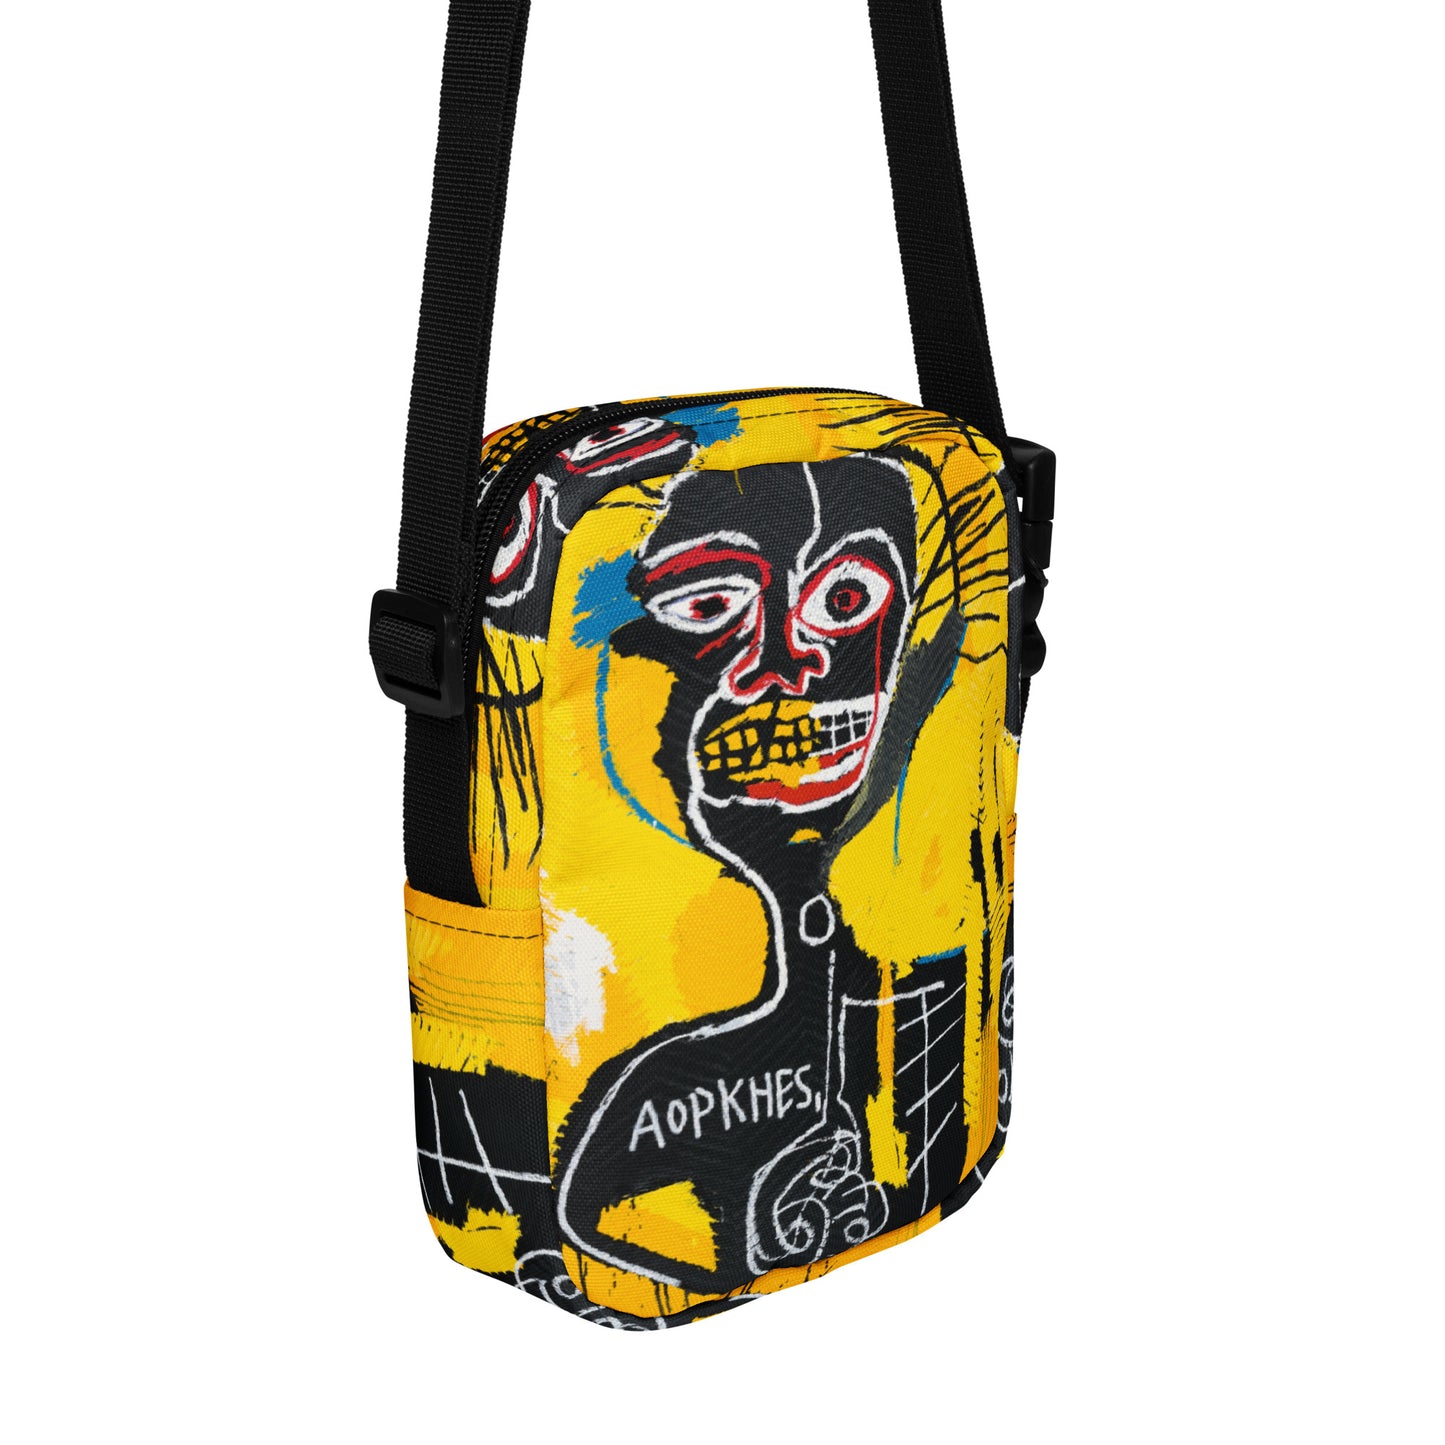 Jean-Michel Basquiat "Cabeza" Artwork Bag